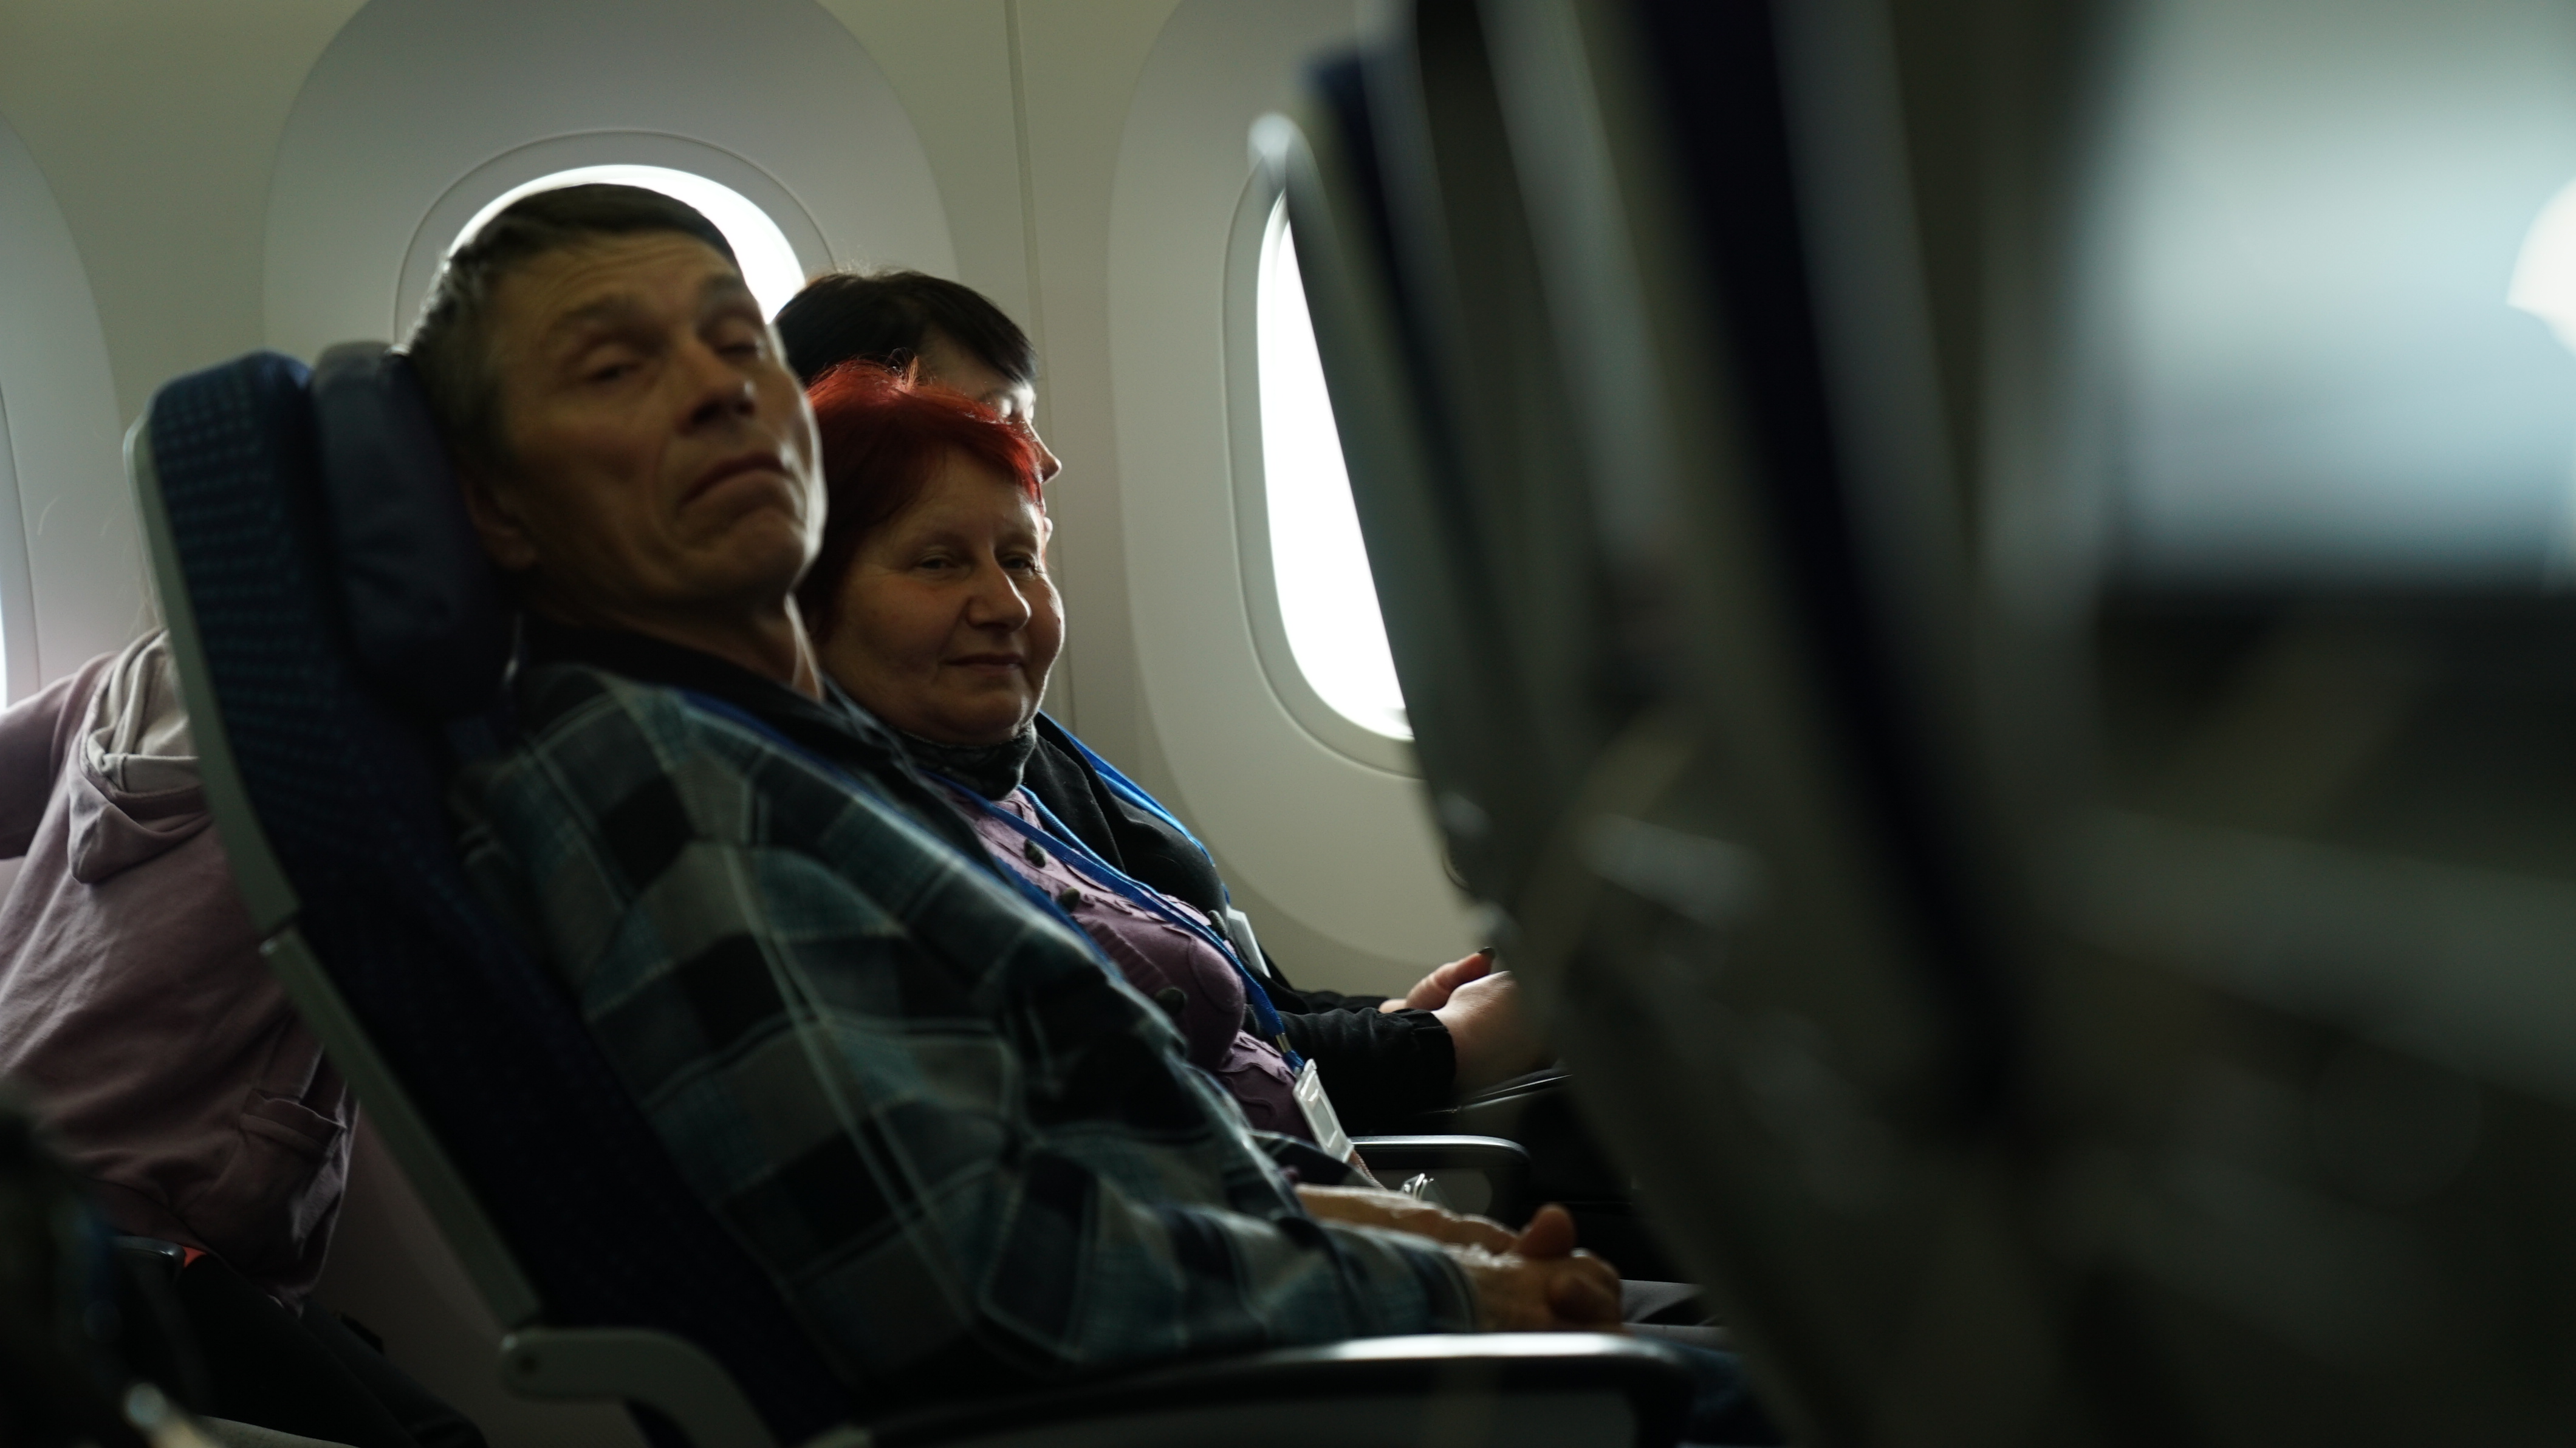 Hombres mayores de 60, mujeres y niños. Son los únicos ucranianos que pueden dejar el país y buscar un nuevo destino, aunque sea temporal